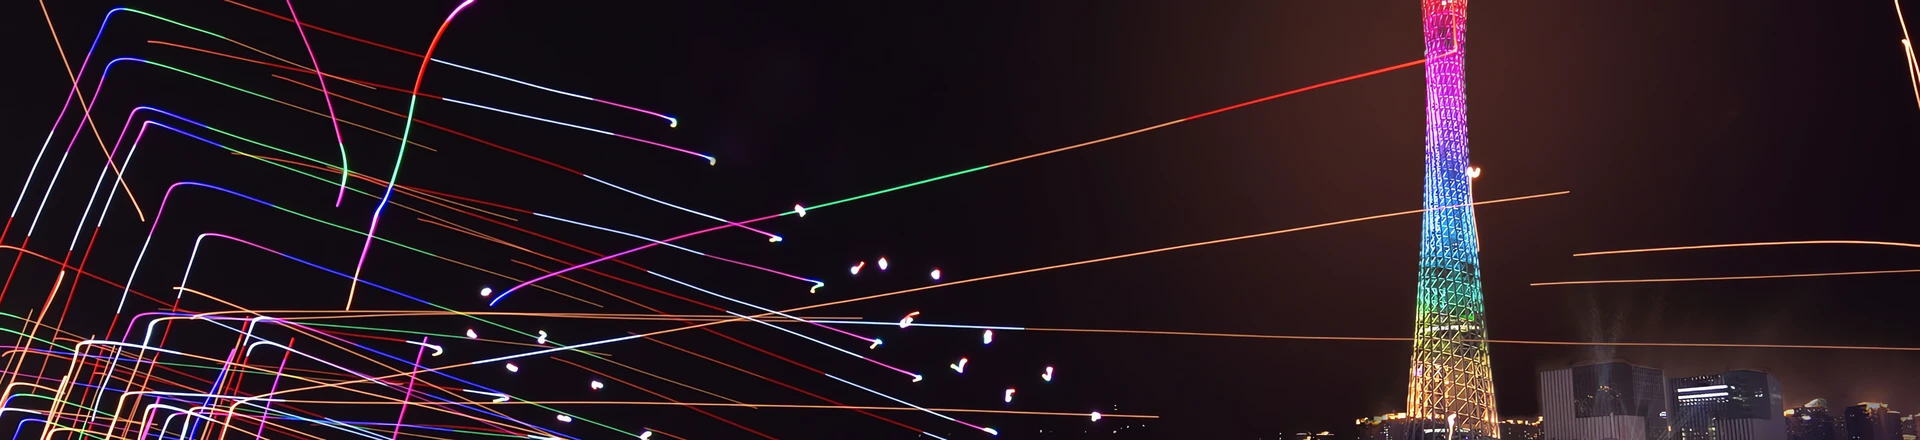 Jak blisko można latać między sobą dronami? Przyszłość pokazów świetlnych